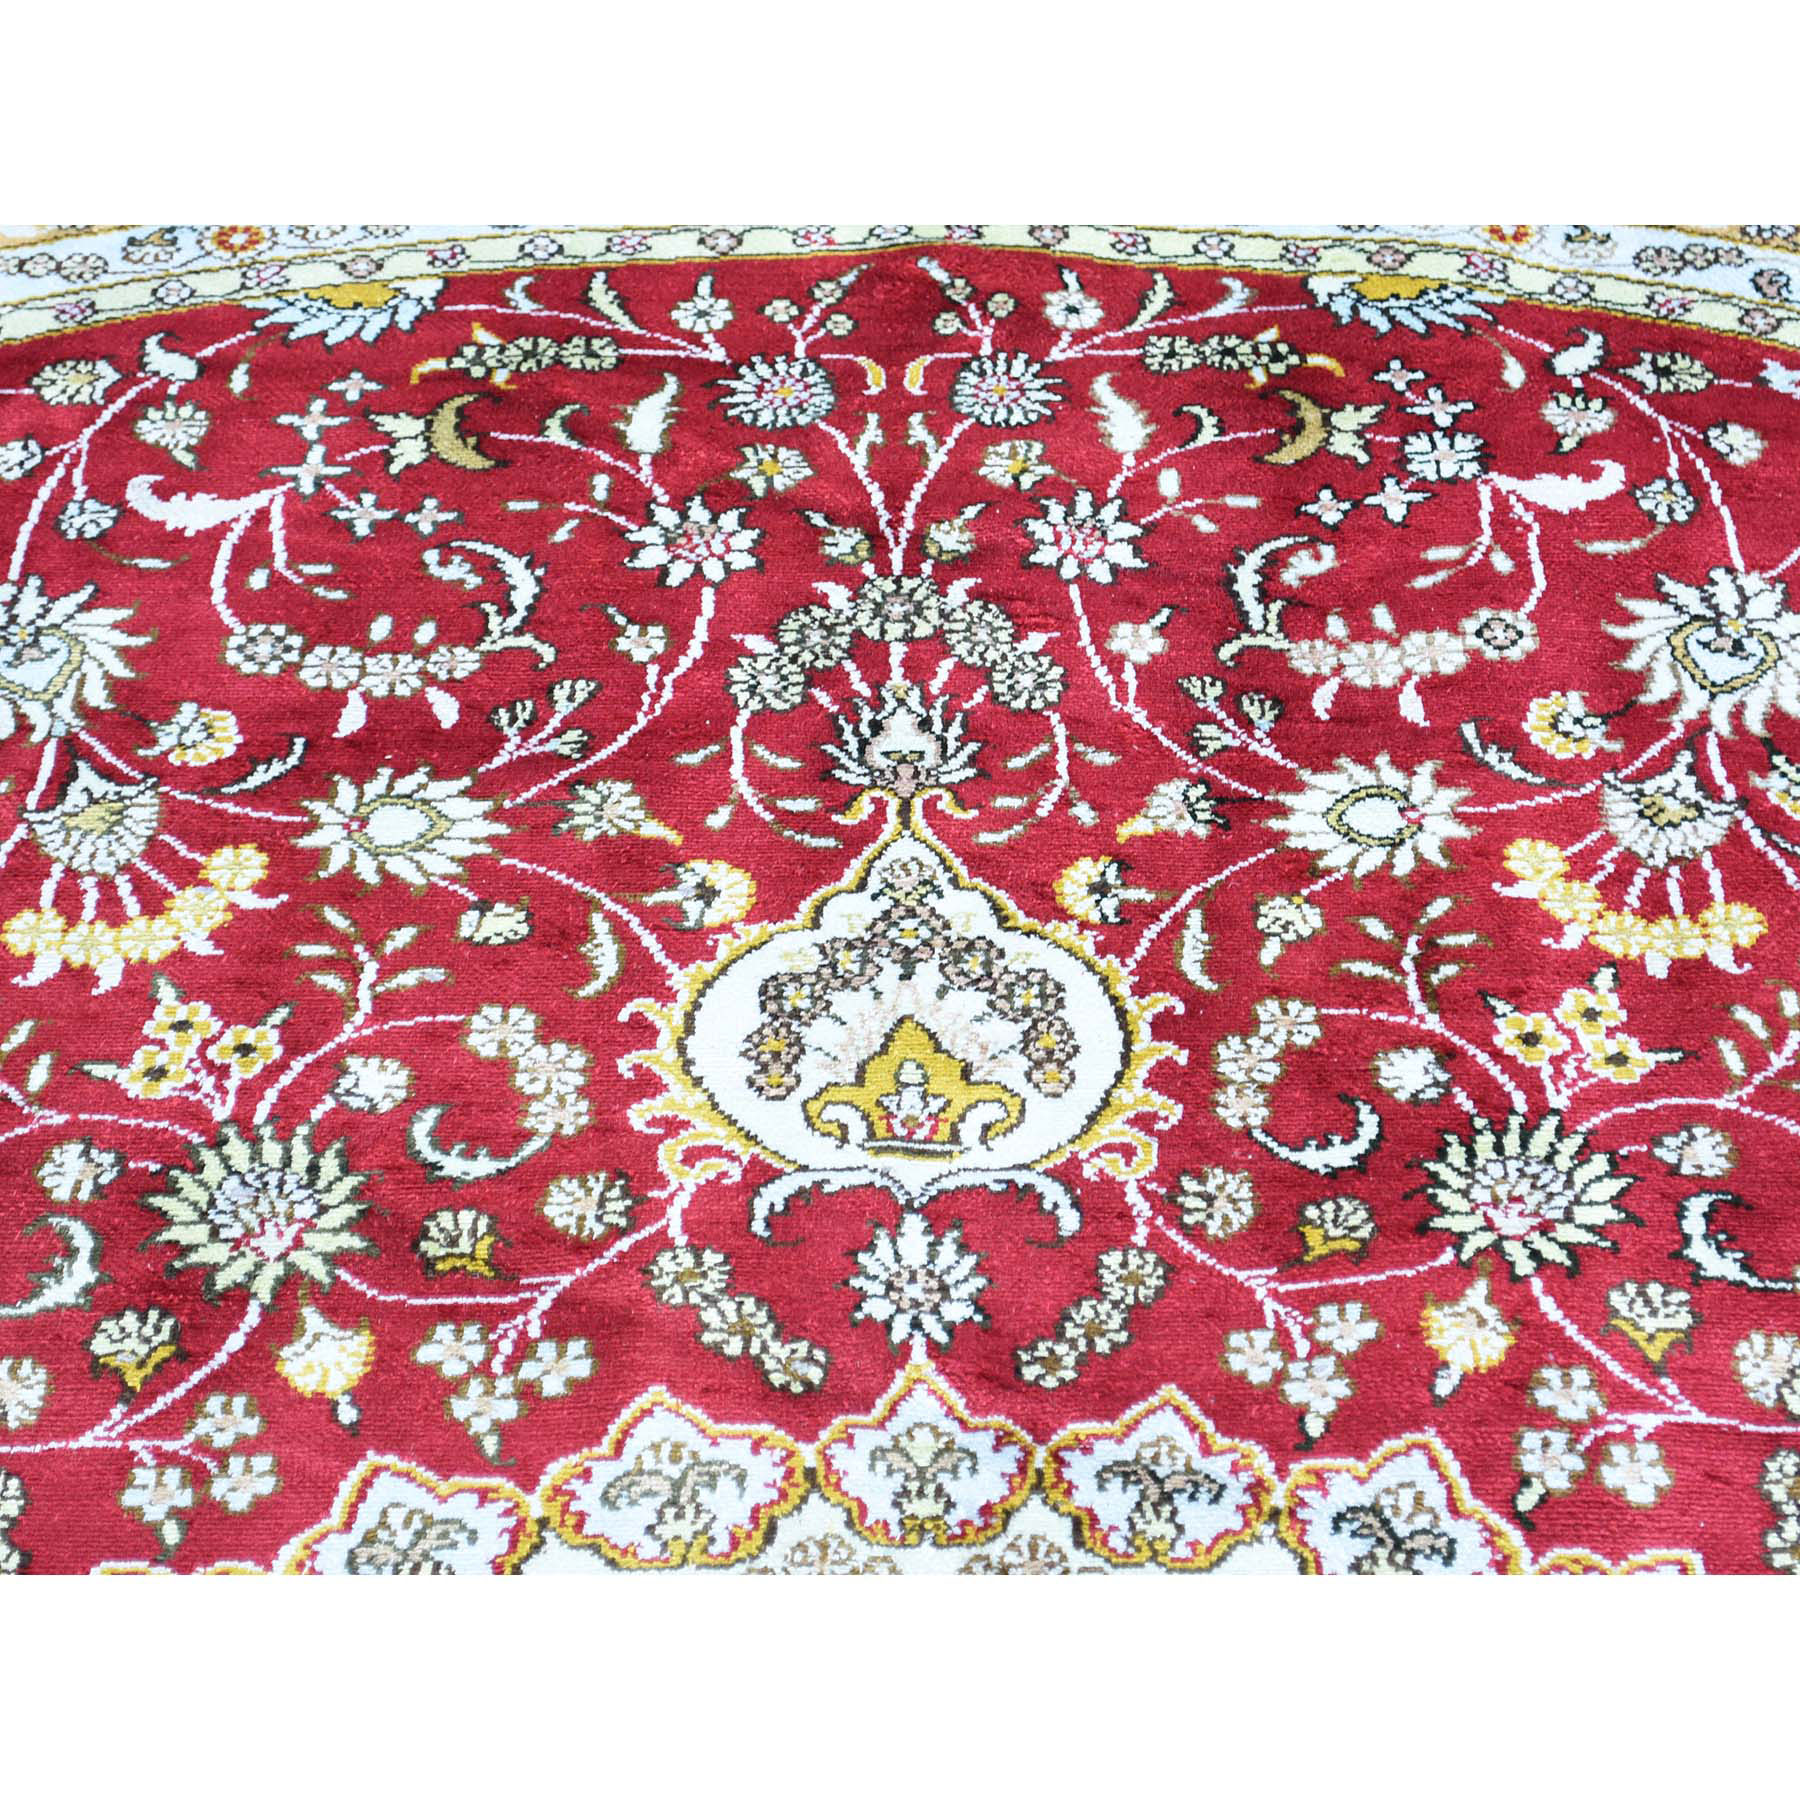 10-9 x10-9  Round Hand-Knotted Silken 300 Kpsi Rich Red Oriental Rug 